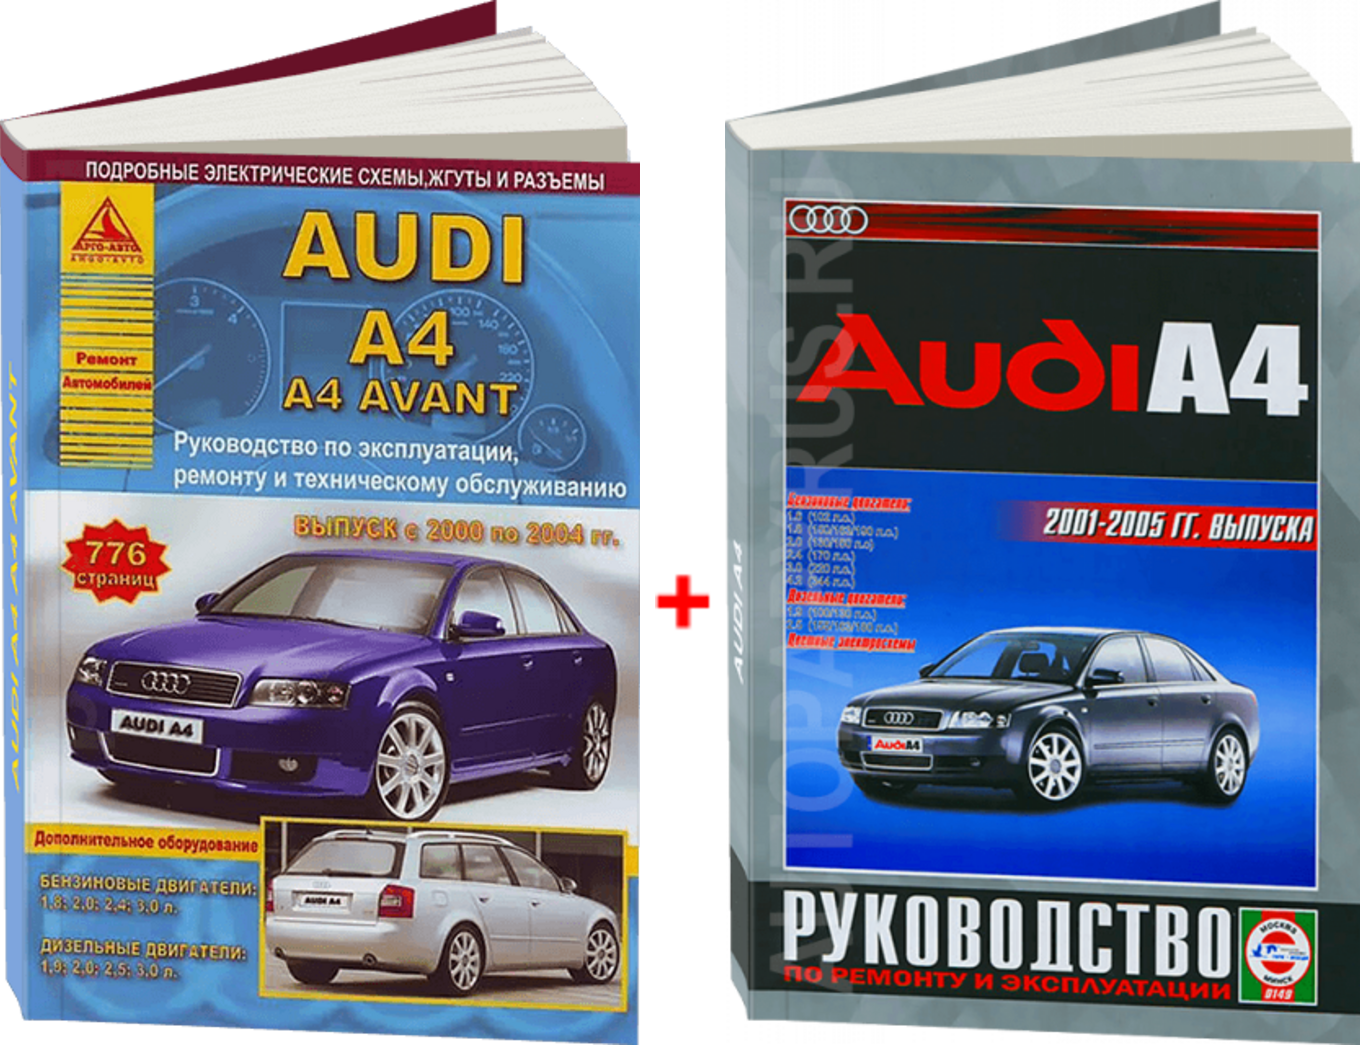 Комплект литературы по ремонту и техническому обслуживанию Audi A4 с 2000 года выпуска